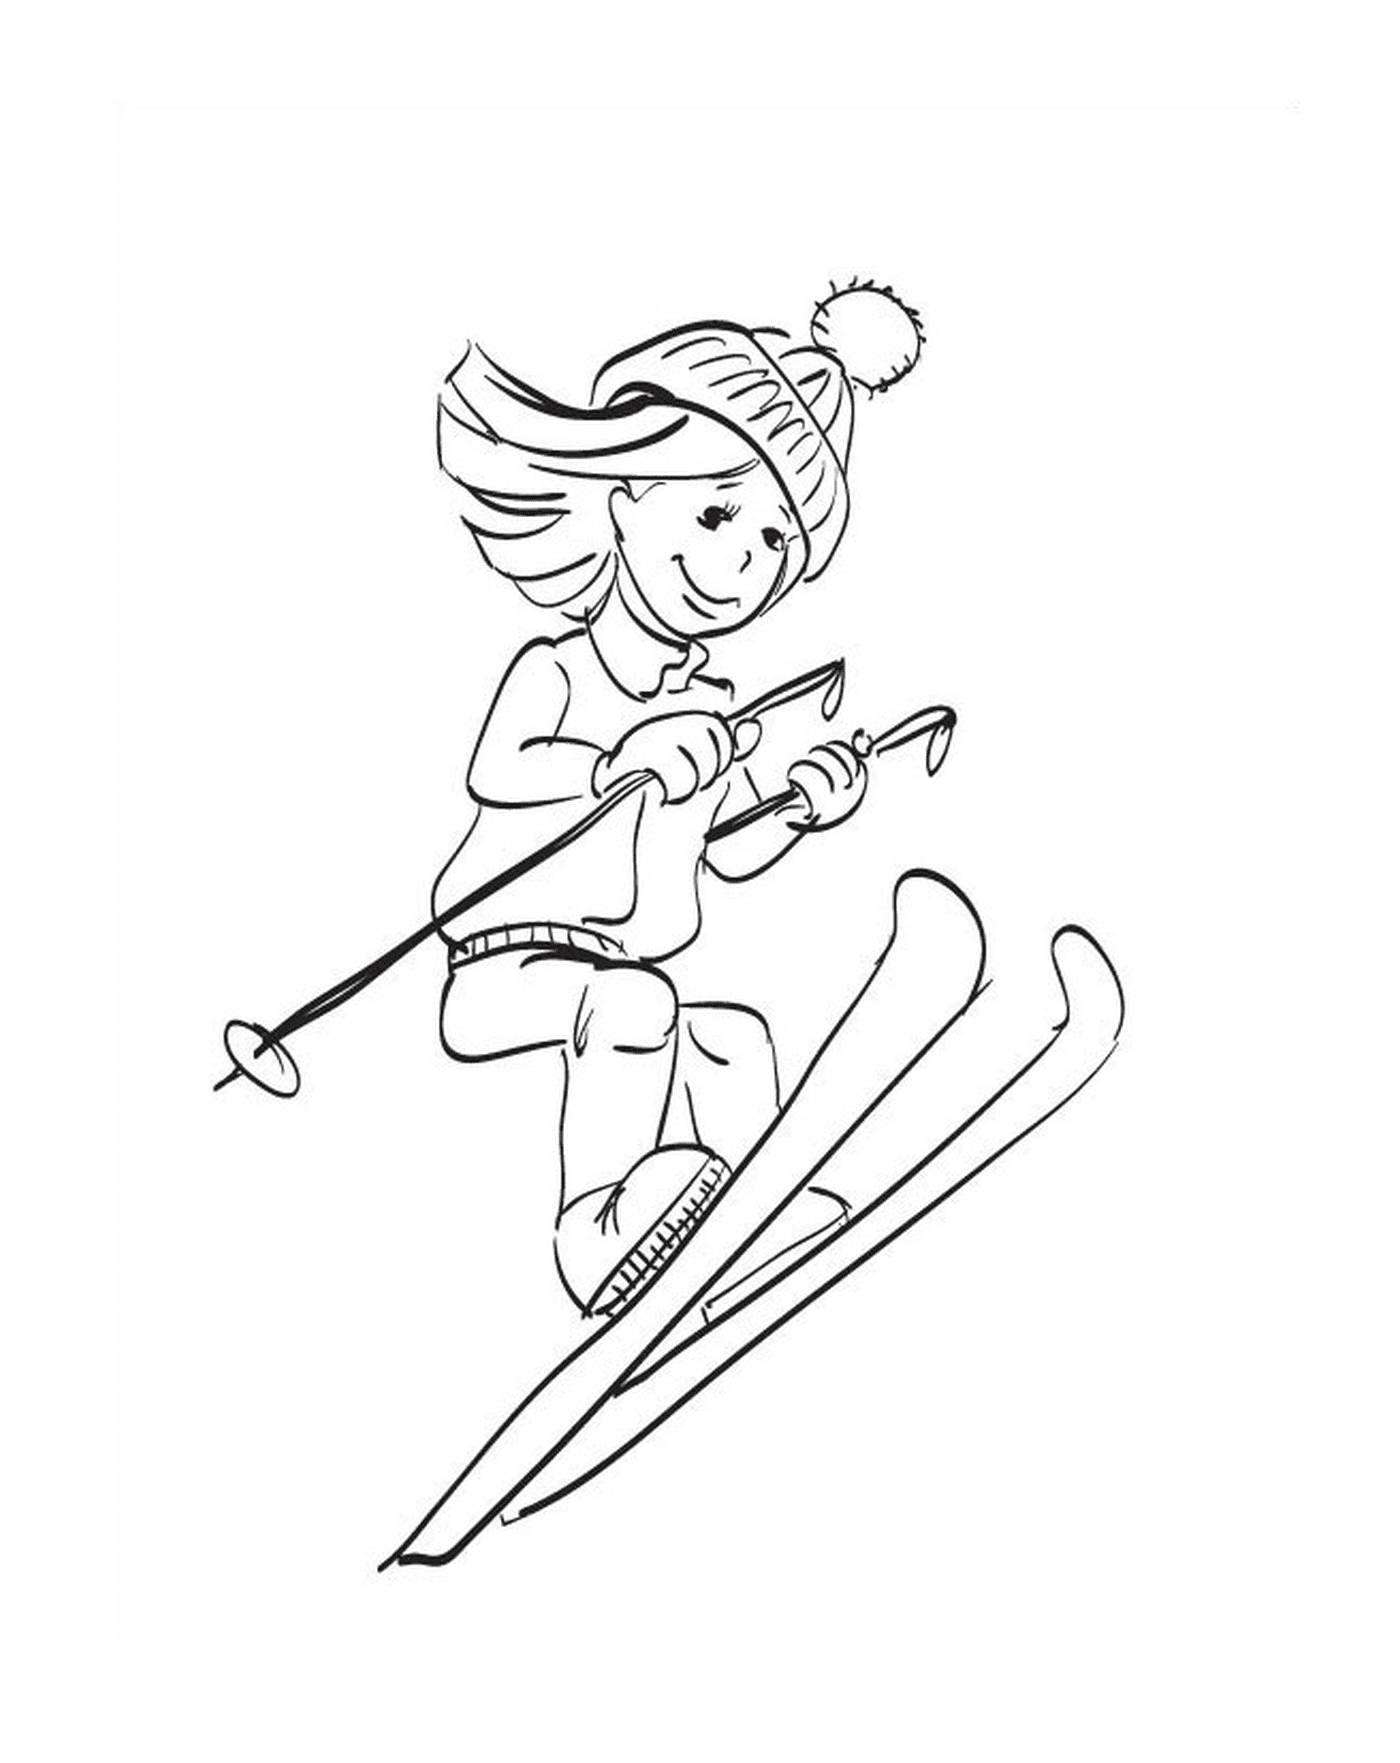  Esporte de inverno, esqui, menina descendo uma encosta 